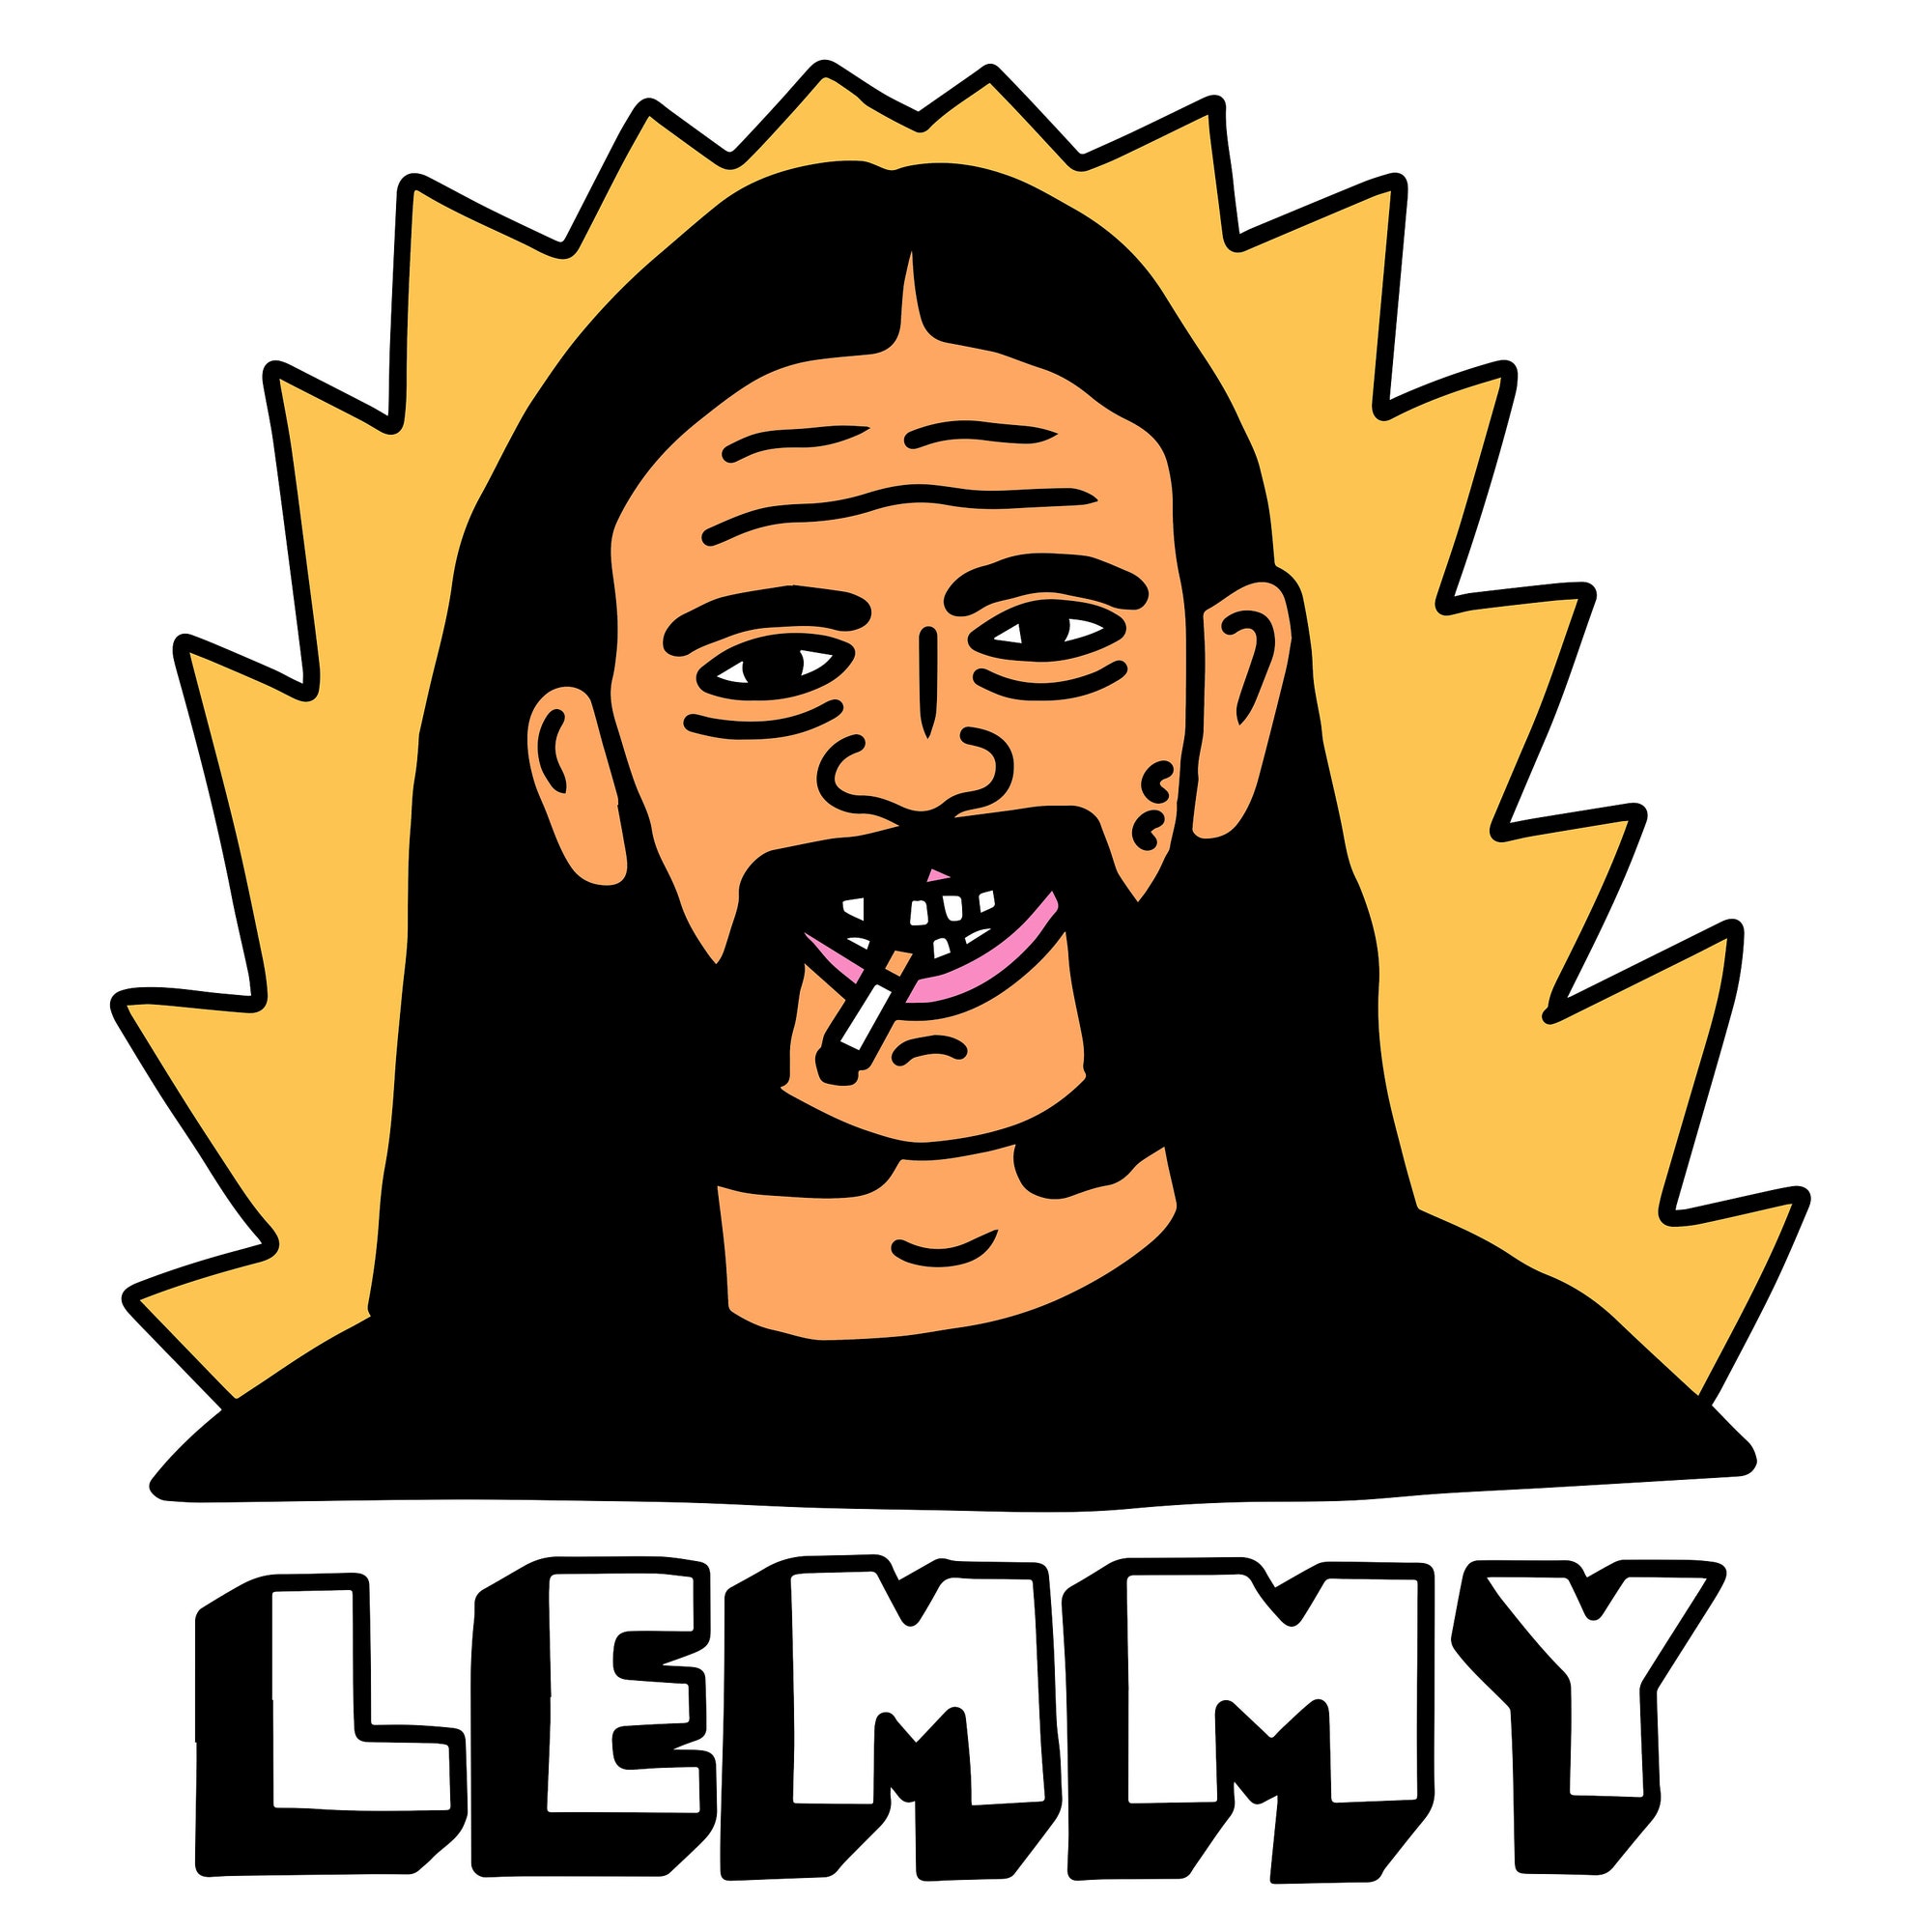 Lemmy motorhead shirt